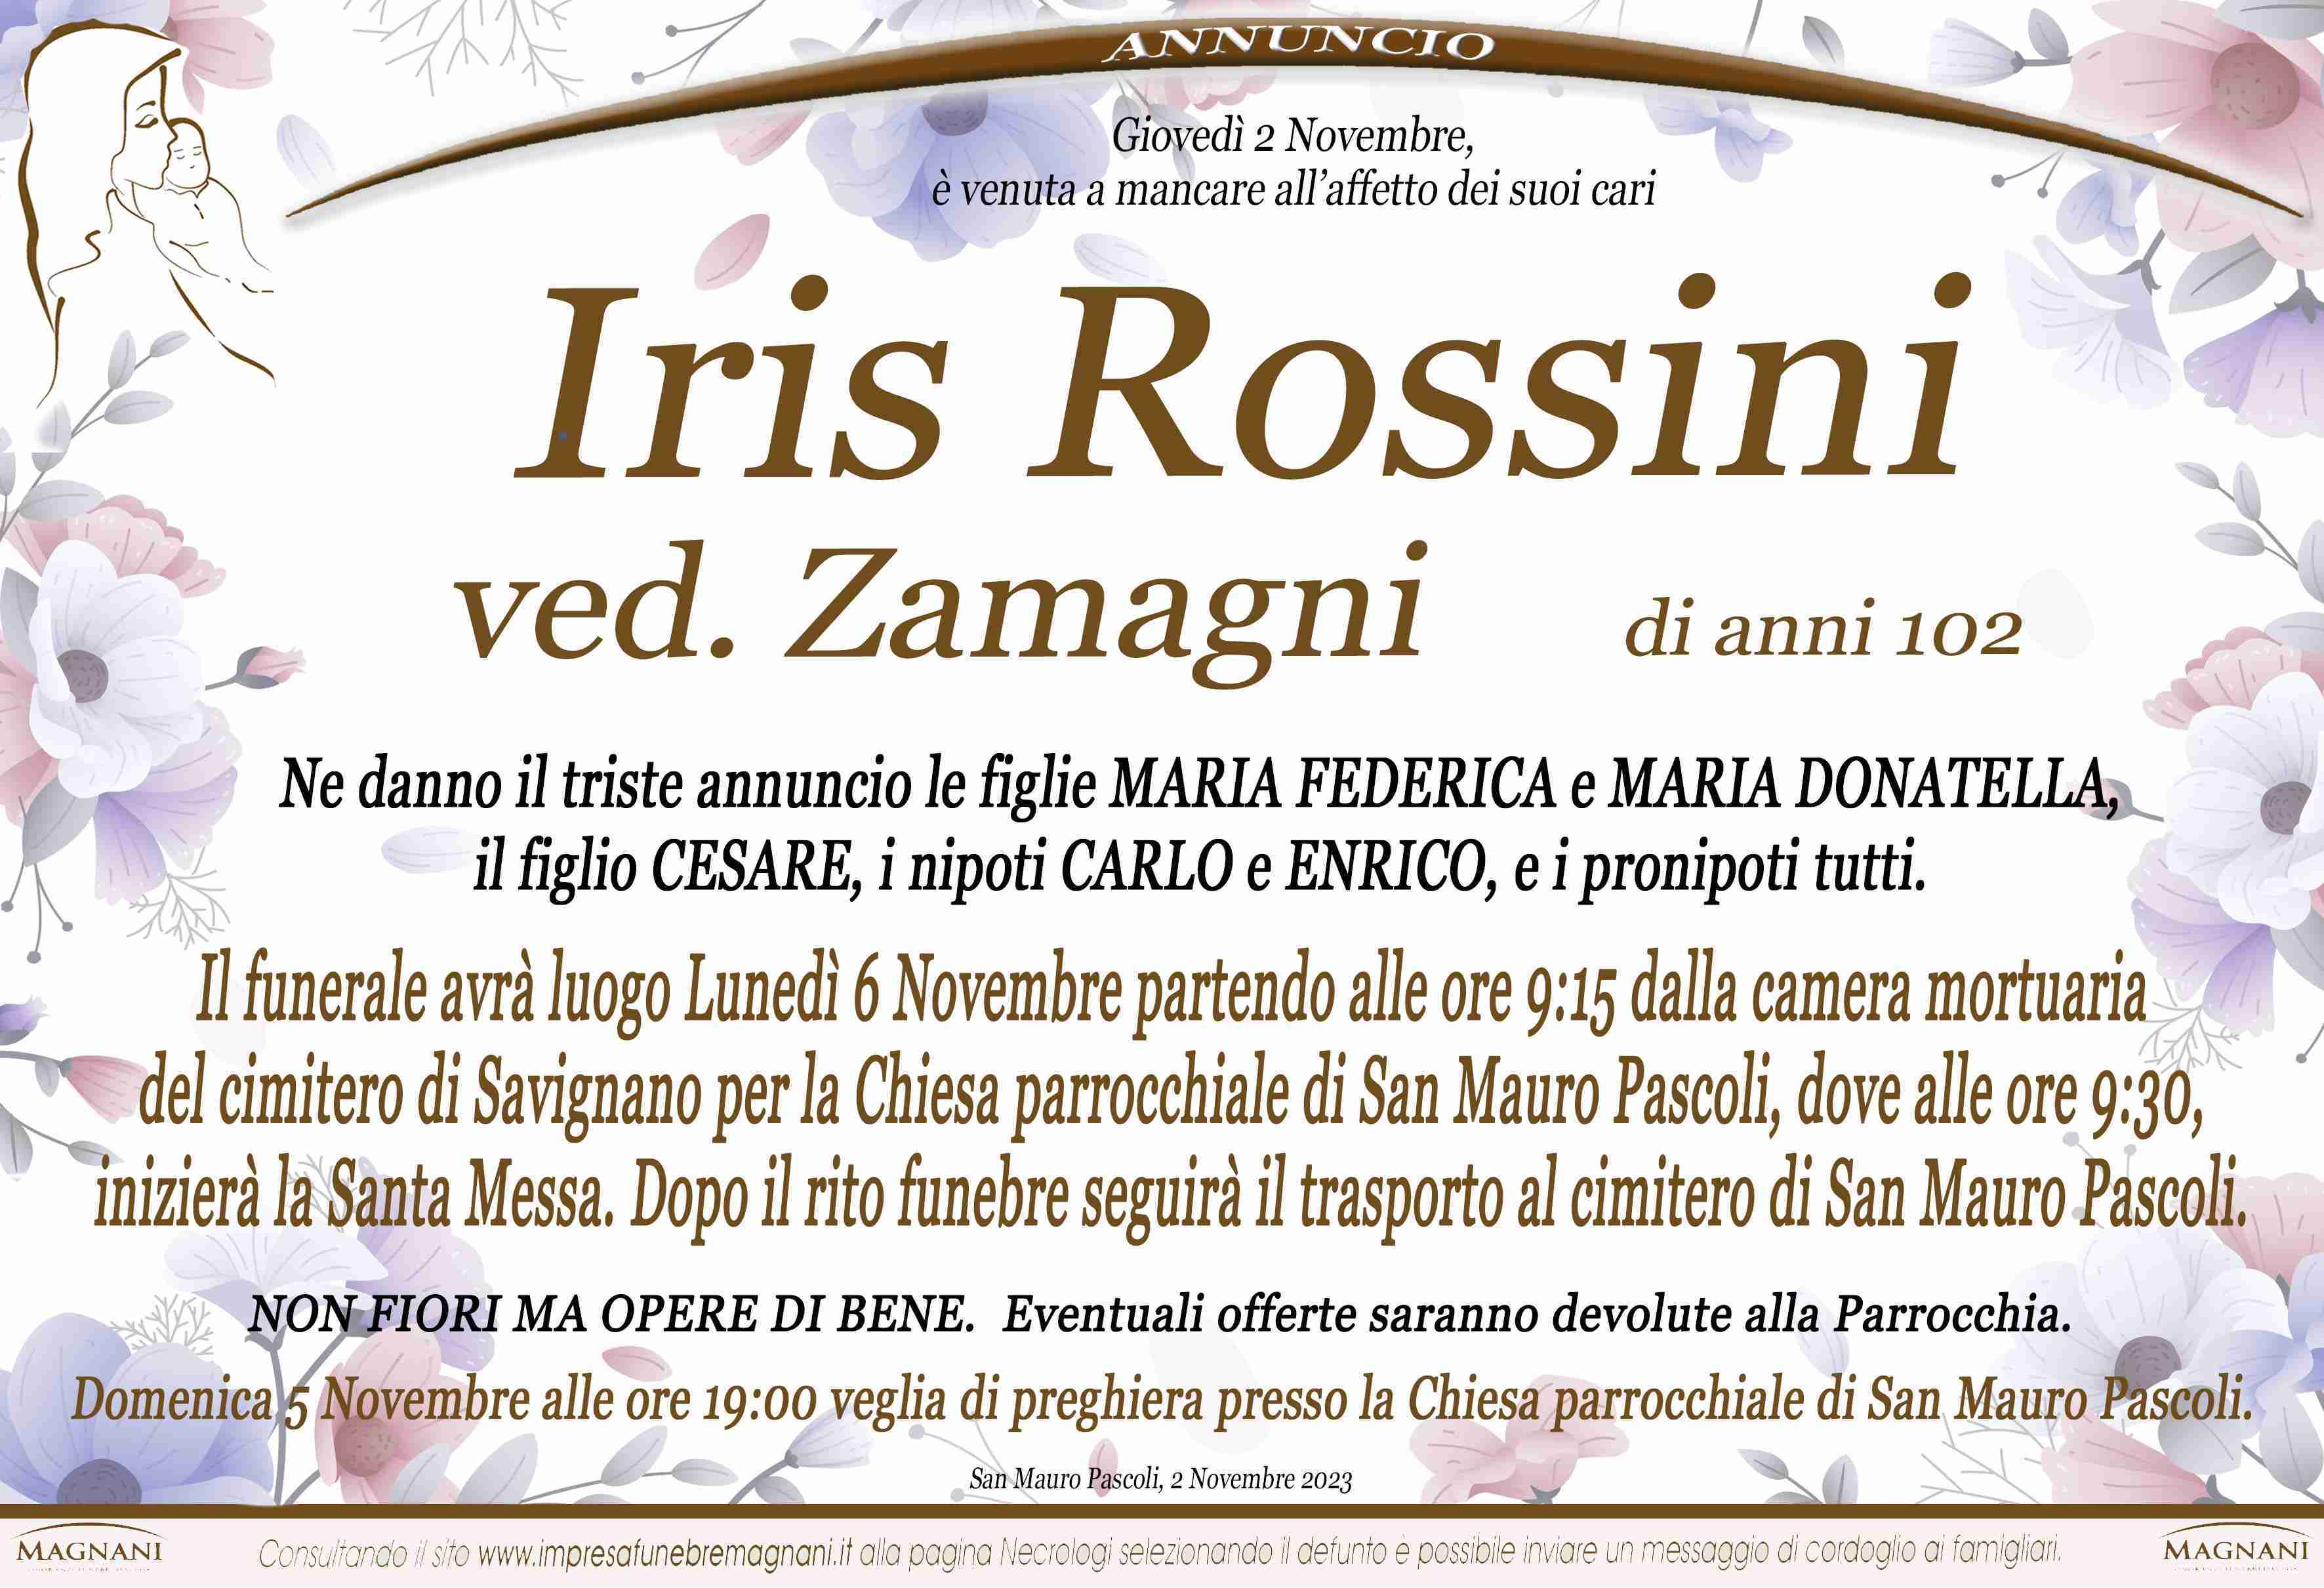 Iris Rossini